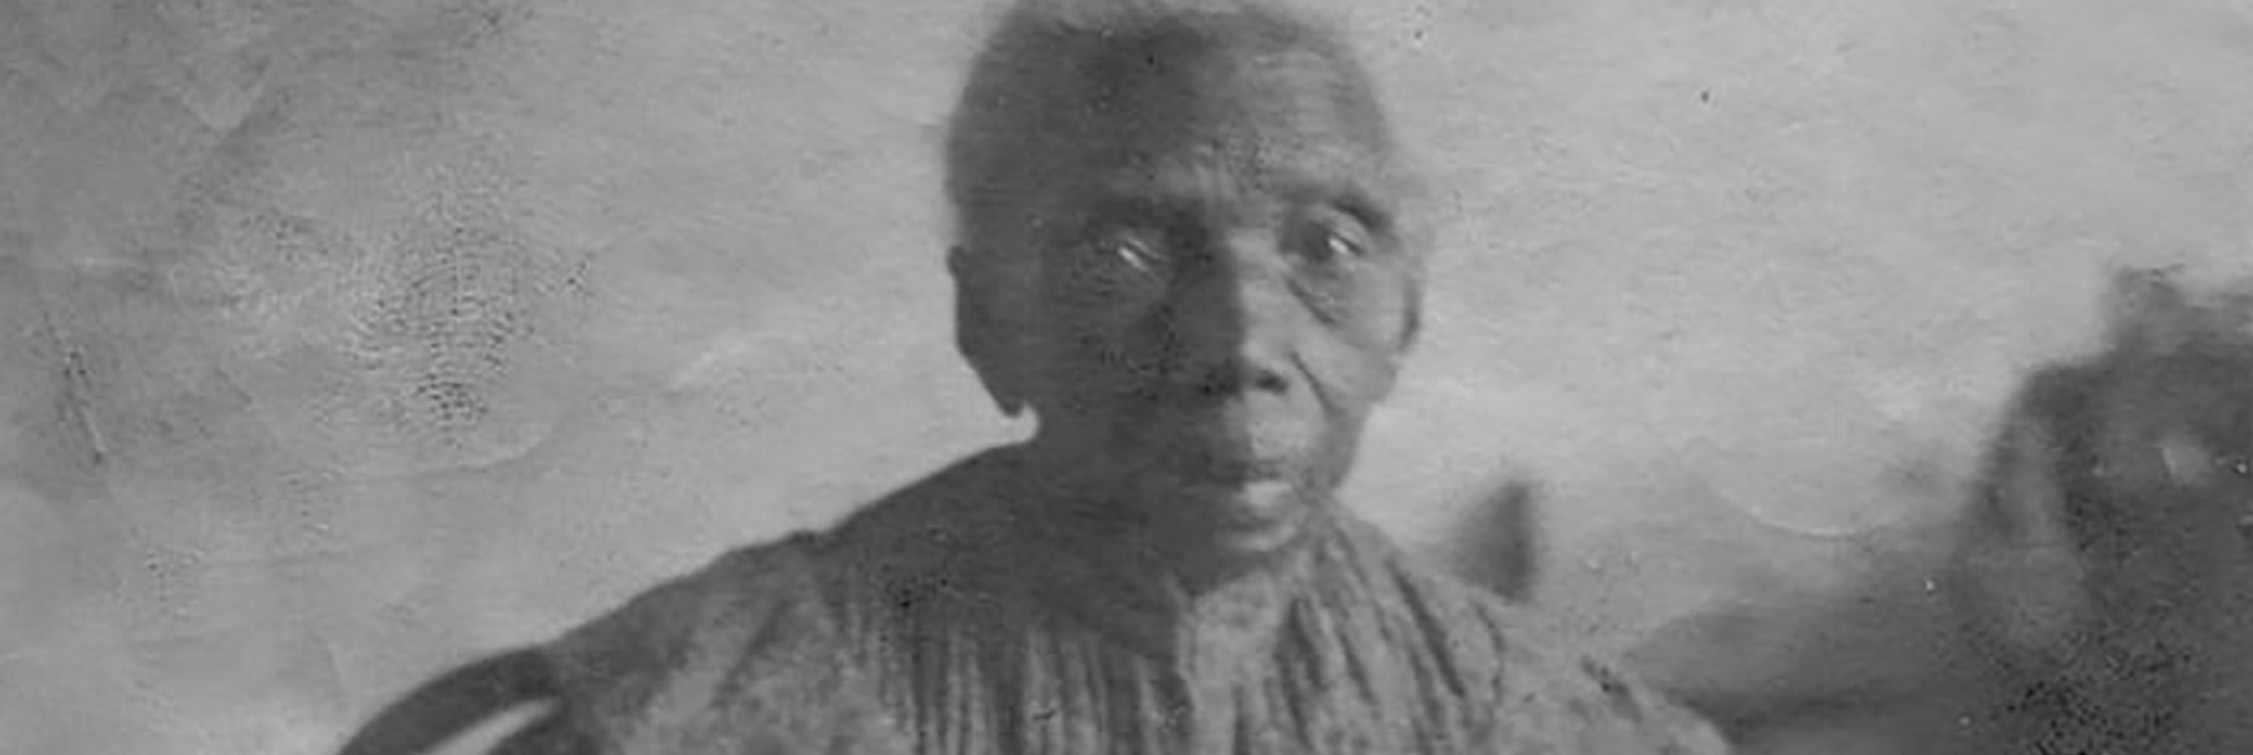 Felipa Larrea: La última mujer afroargentina esclavizada sobreviviente del período colonial